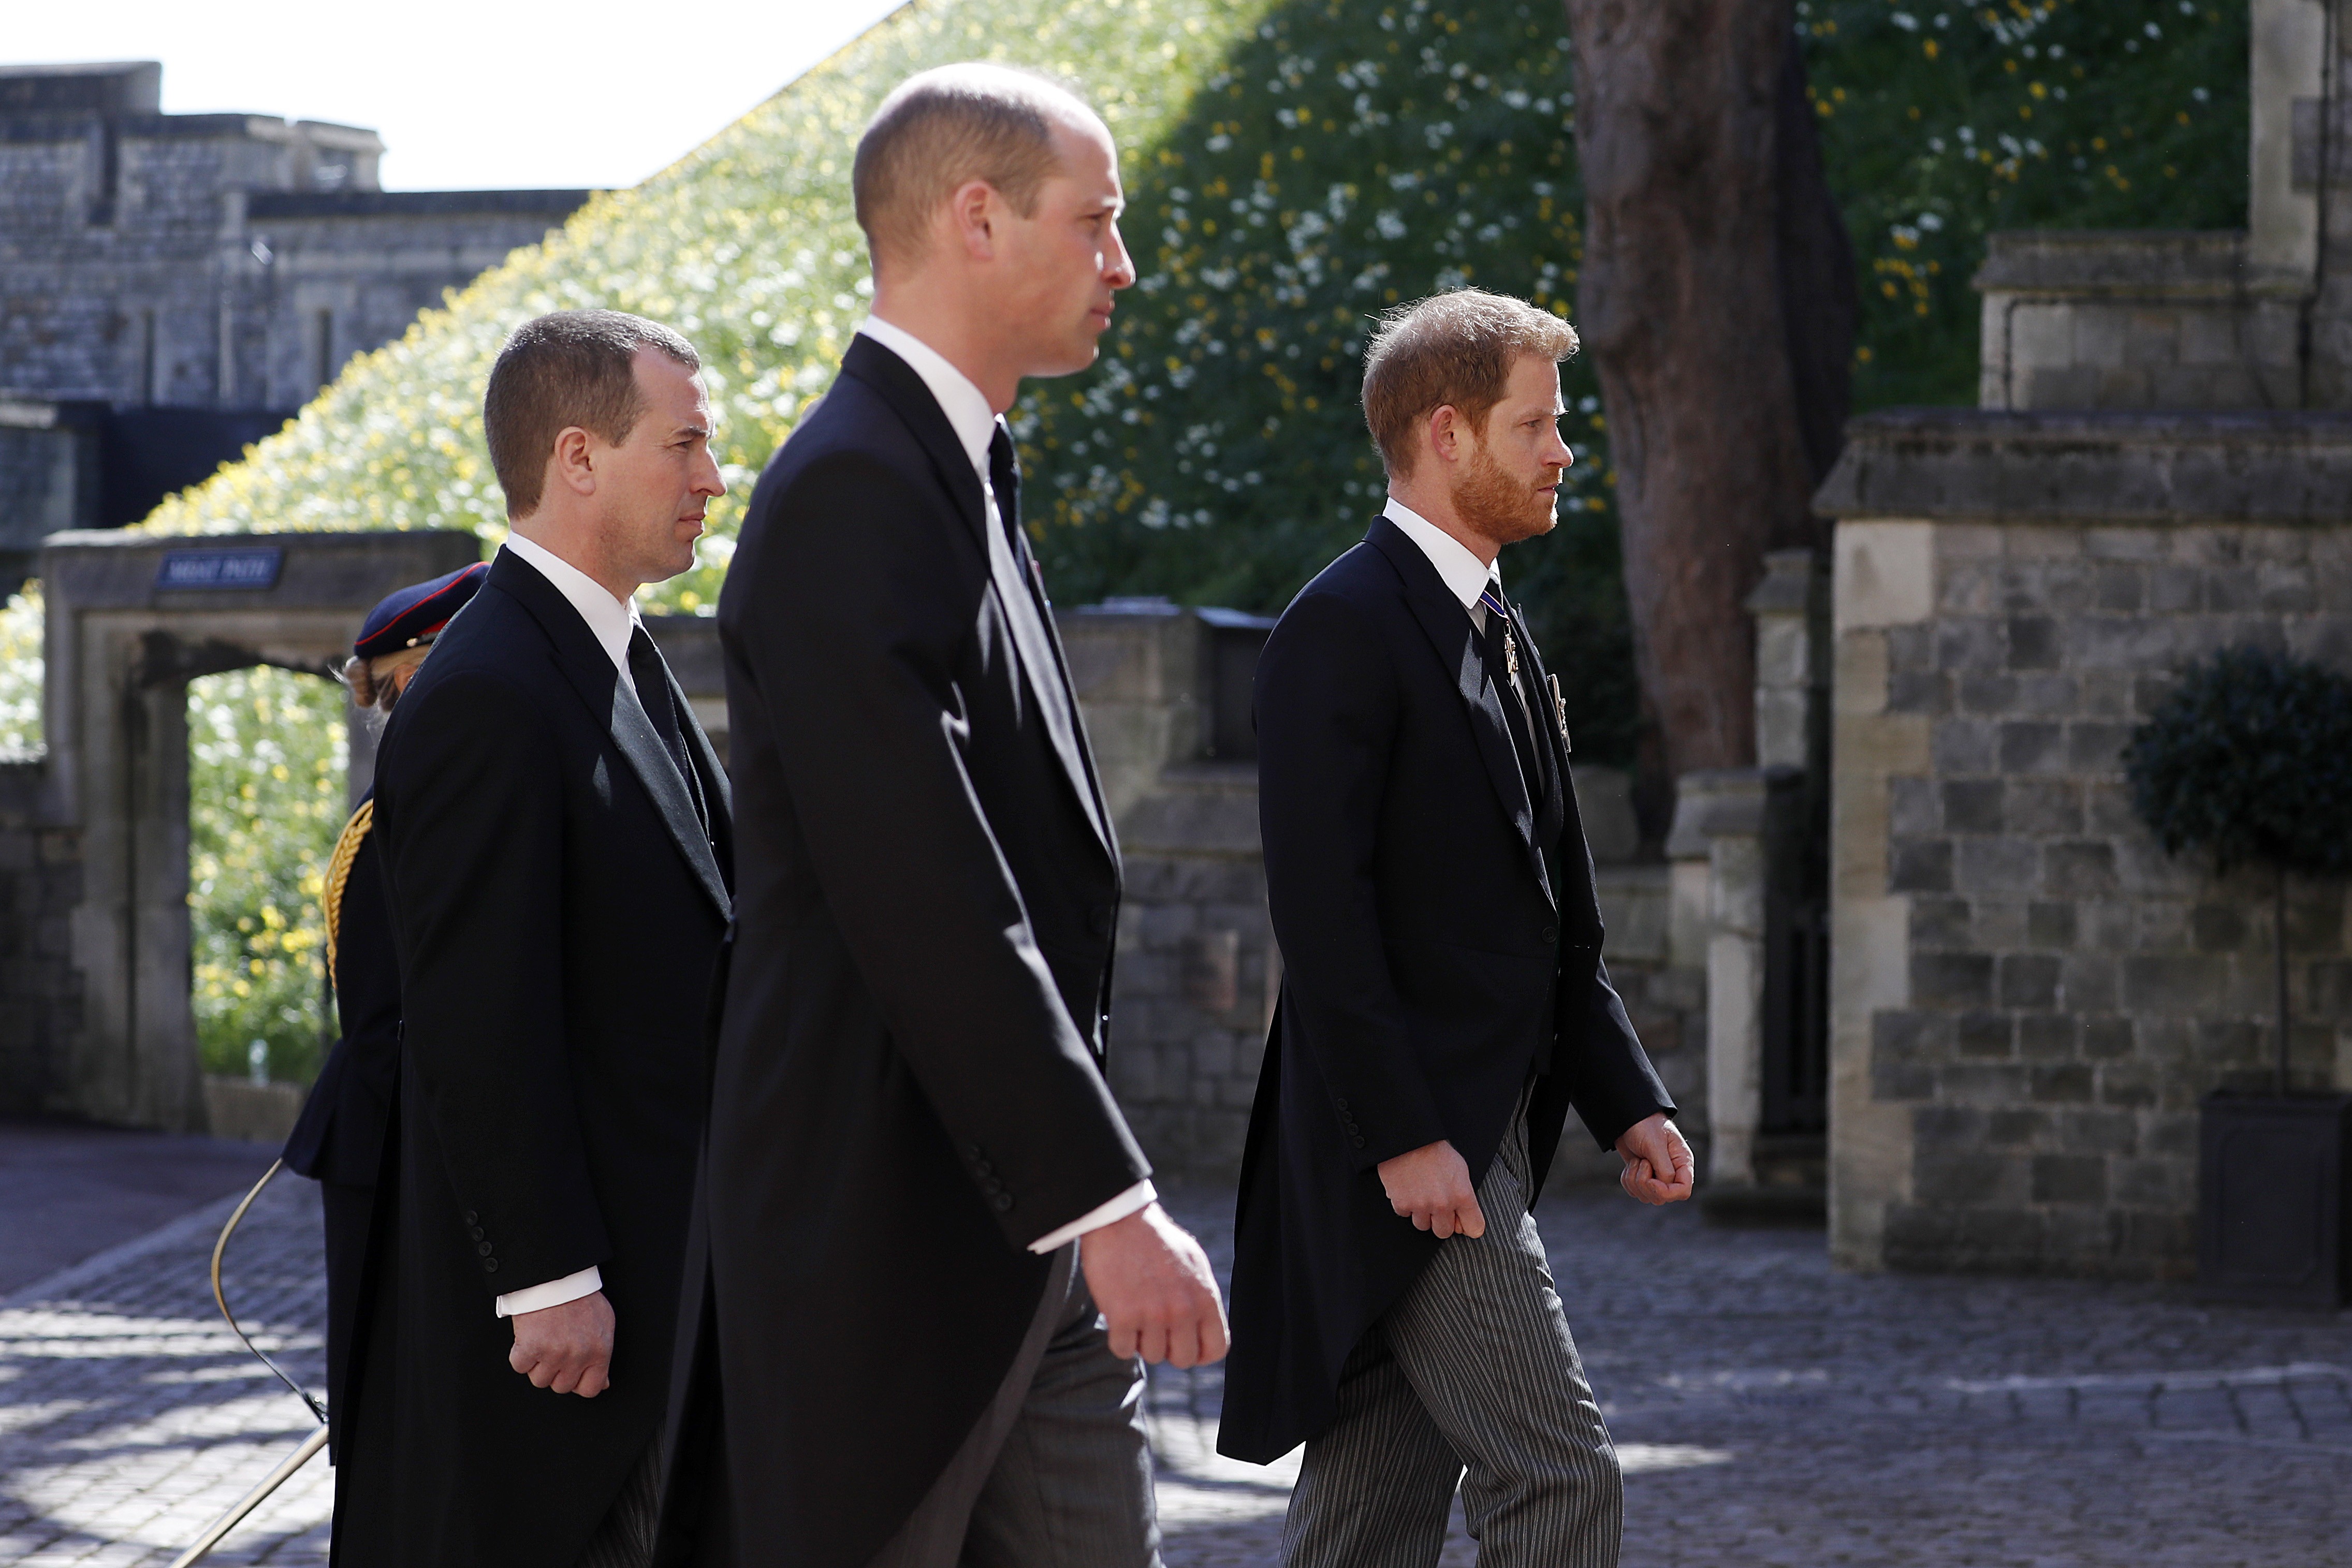 No funeral do príncipe Philip, William e Harry caminham separados por um primo -  (Foto: getty images)